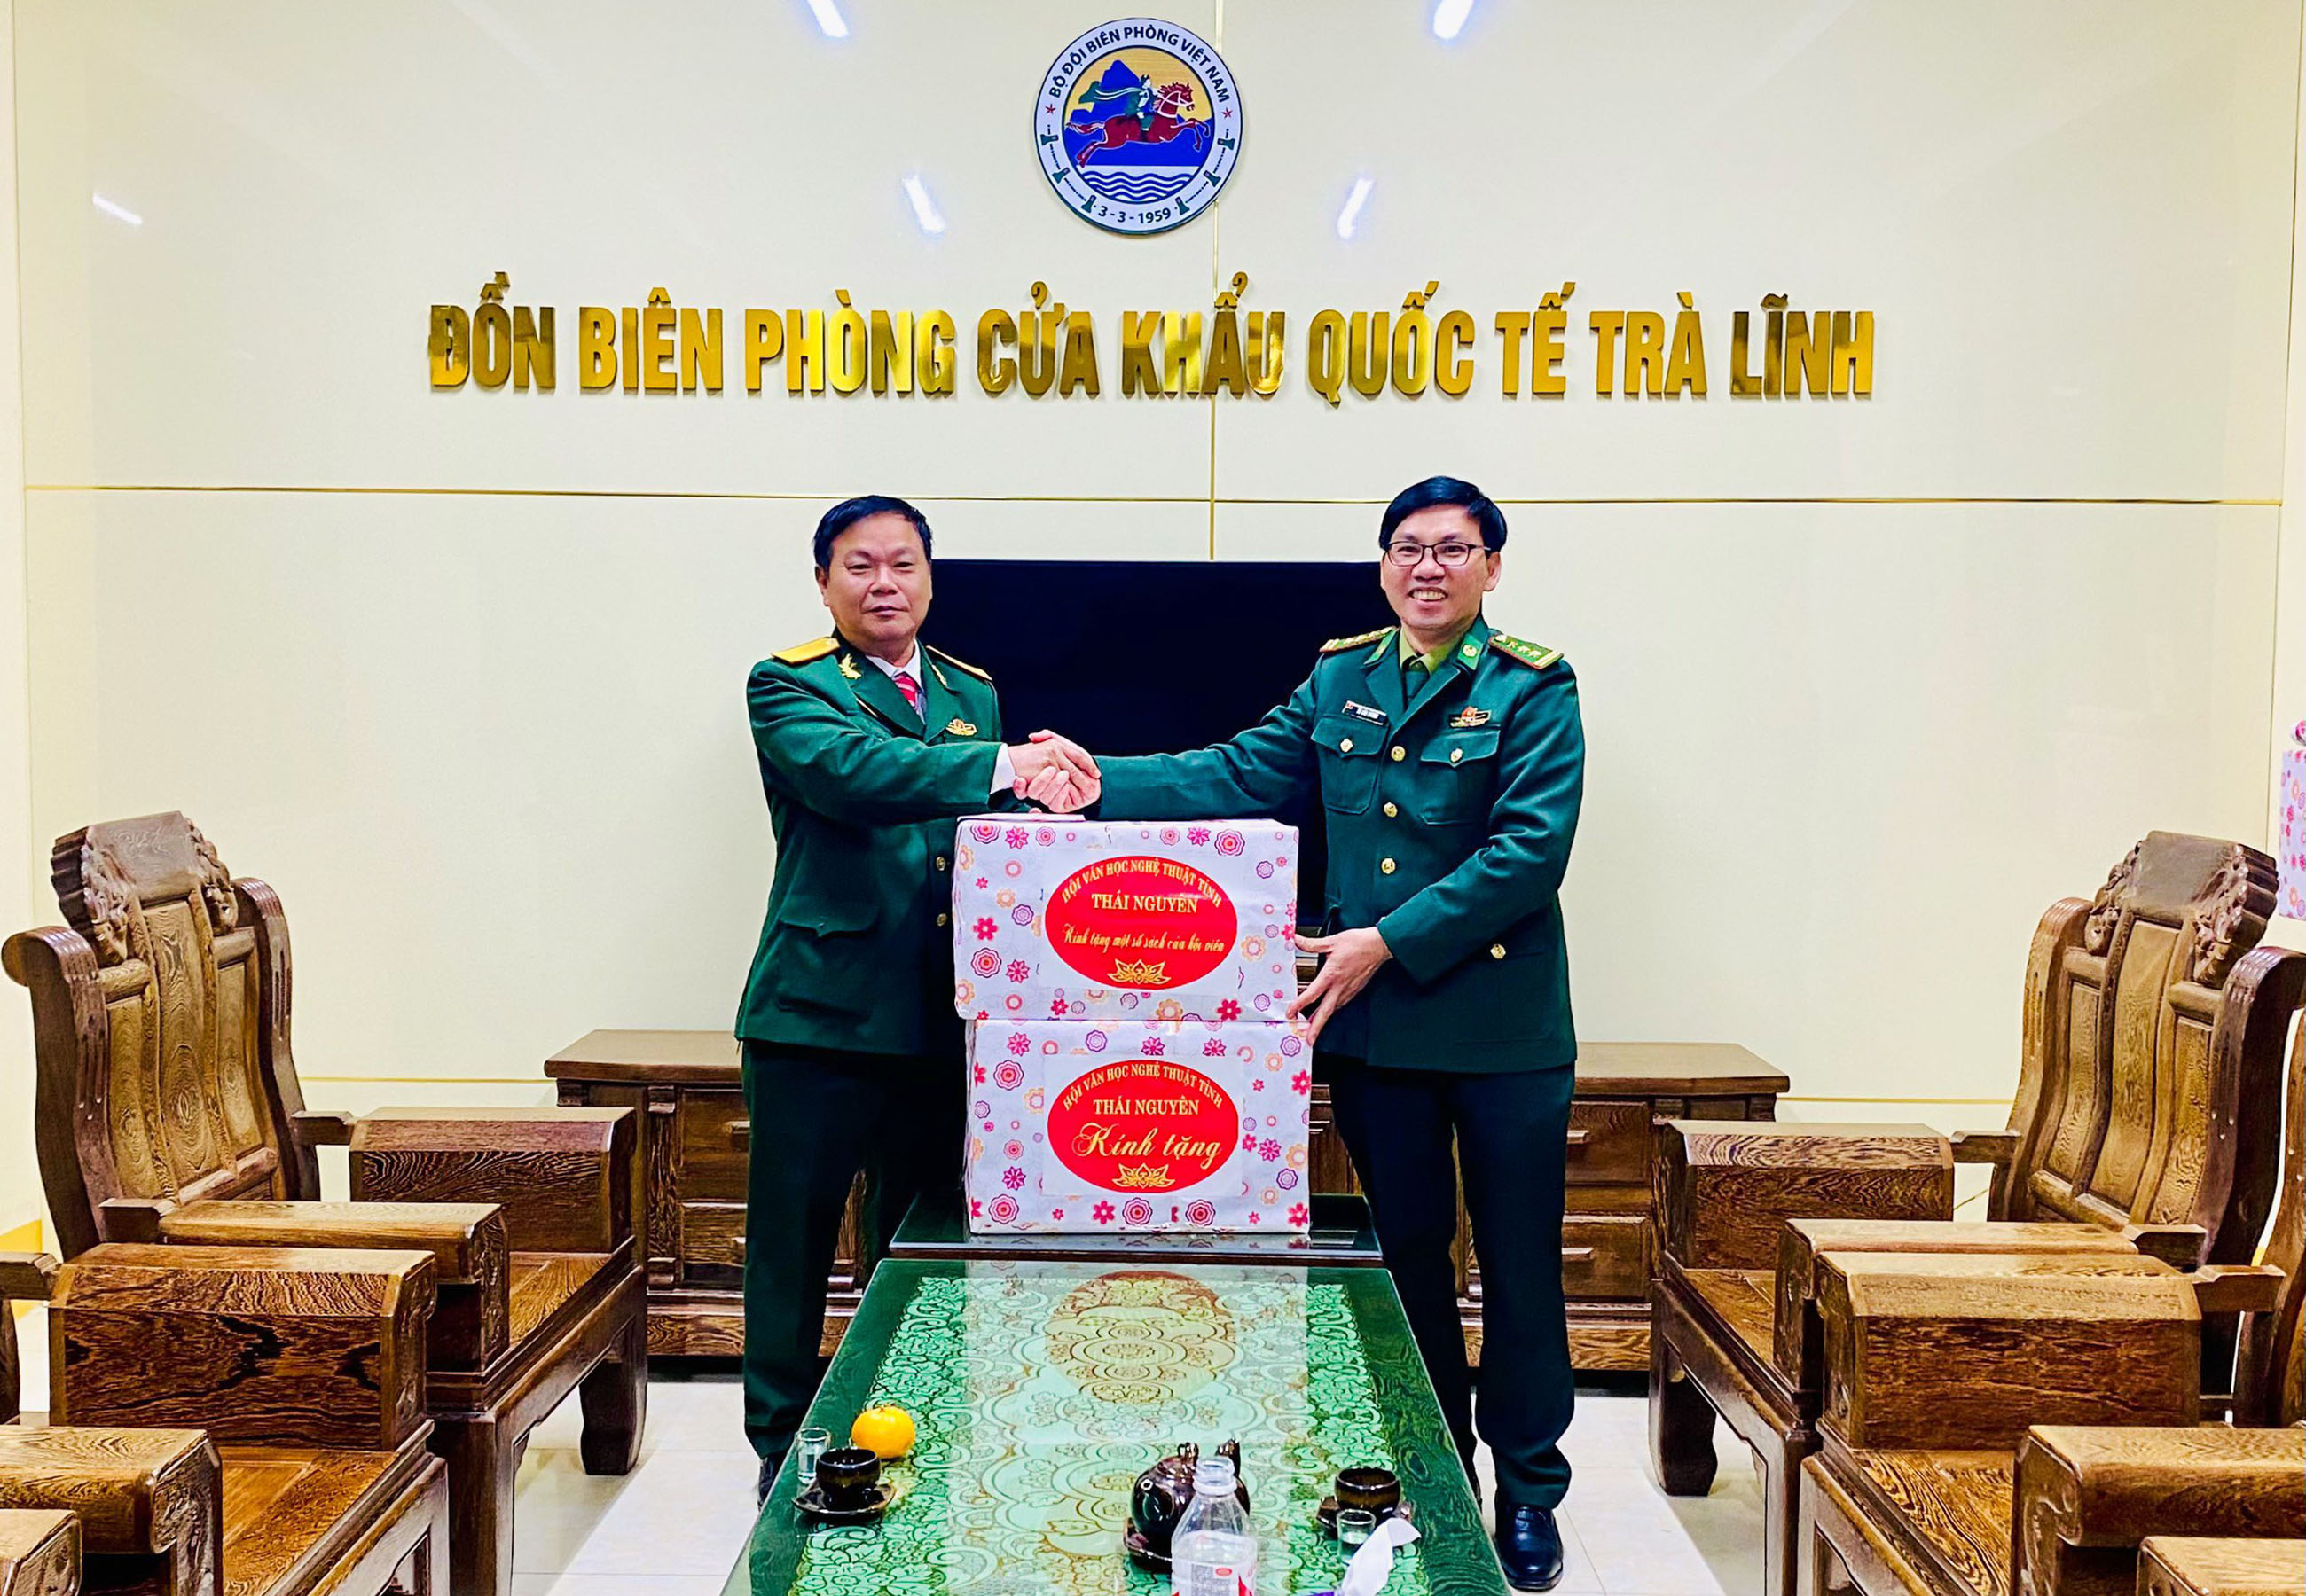 Tác giả (trái) thay mặt Hội Văn học nghệ thuật tỉnh Thái Nguyên trao tặng quà cho cán bộ, chiến sĩ Đồn Biên phòng Cửa khẩu quốc tế Trà Lĩnh